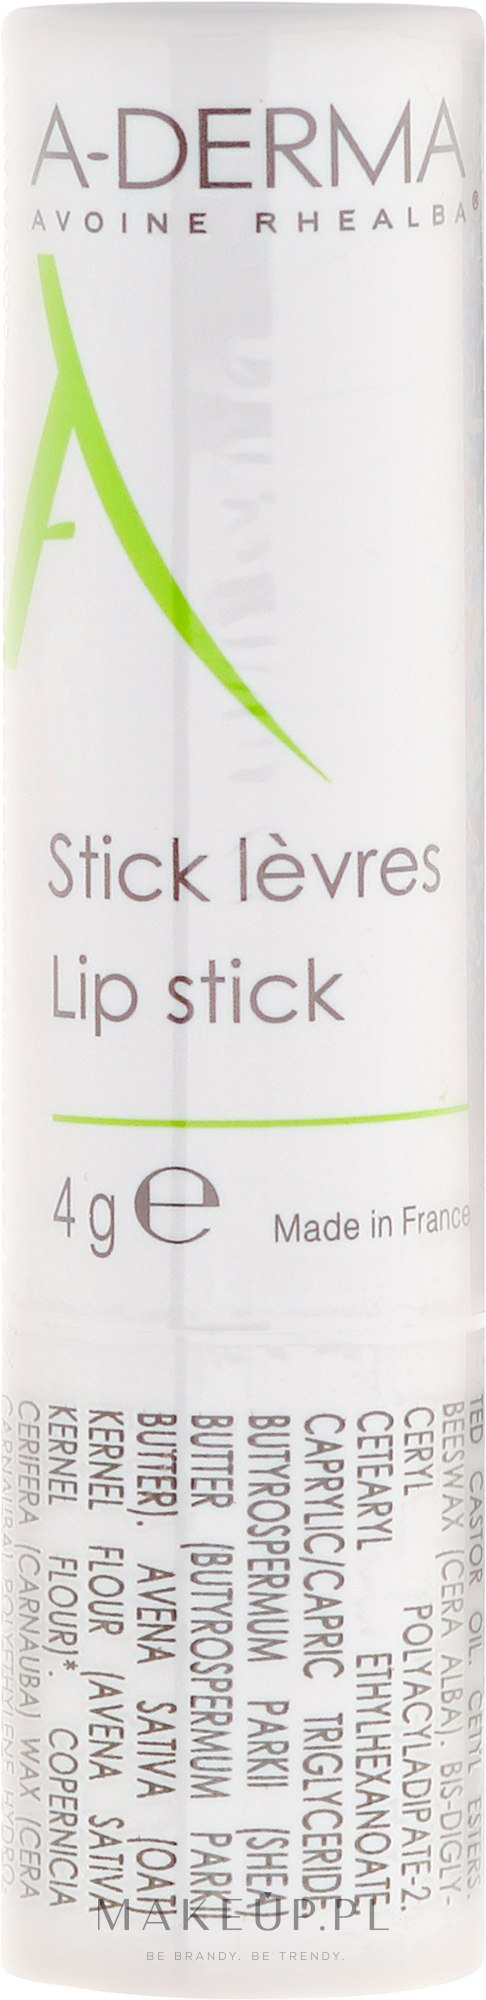 Sztyft do ust z wyciągiem z owsa rhealba - A-Derma Lip Balm Stick — Zdjęcie 4 g